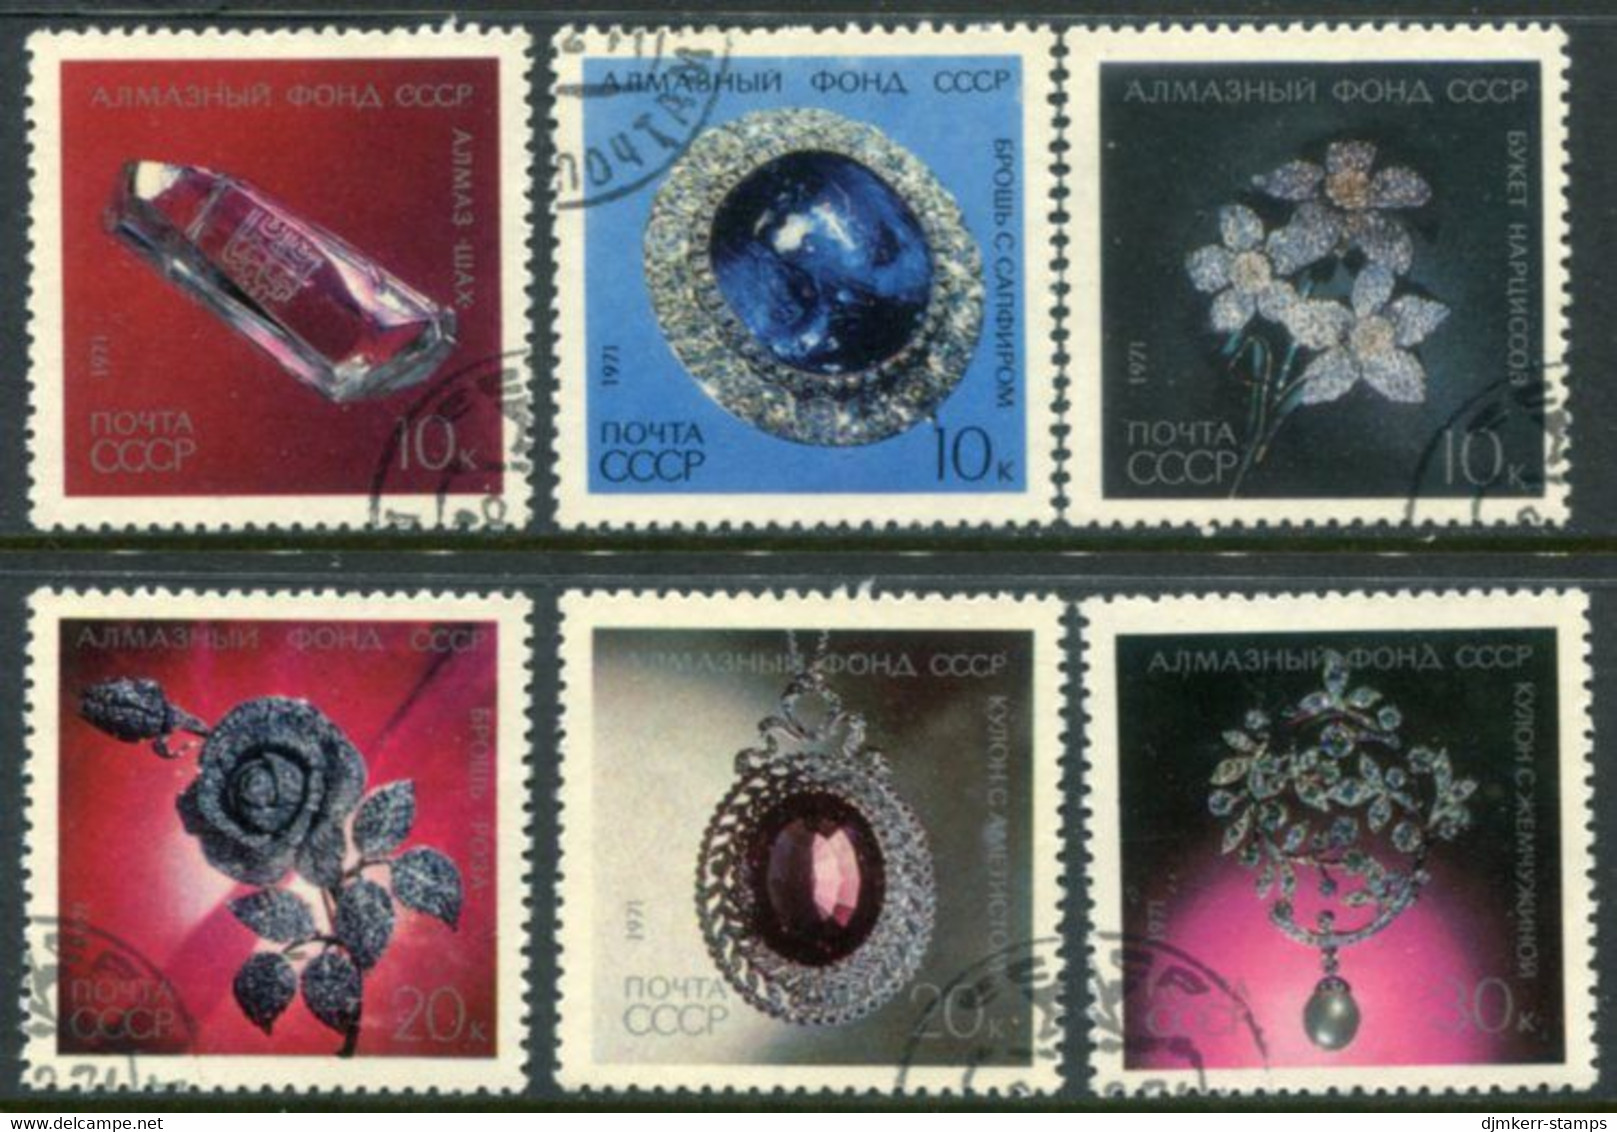 SOVIET UNION 1971 Diamond Jewellery  Used.  Michel 3950-55 - Used Stamps